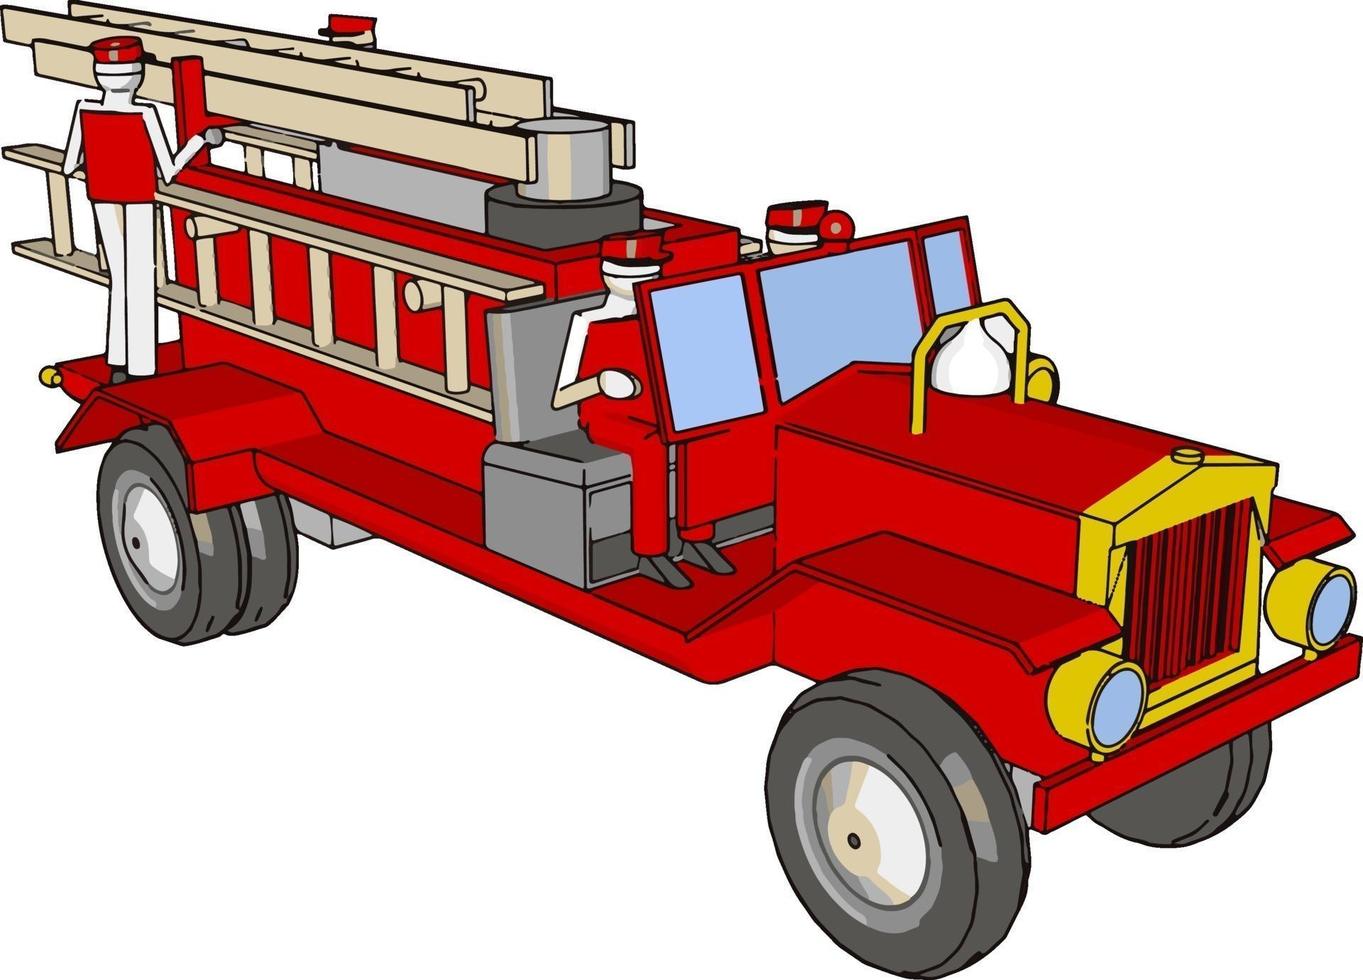 camiones de bomberos rojos, ilustración, vector sobre fondo blanco.